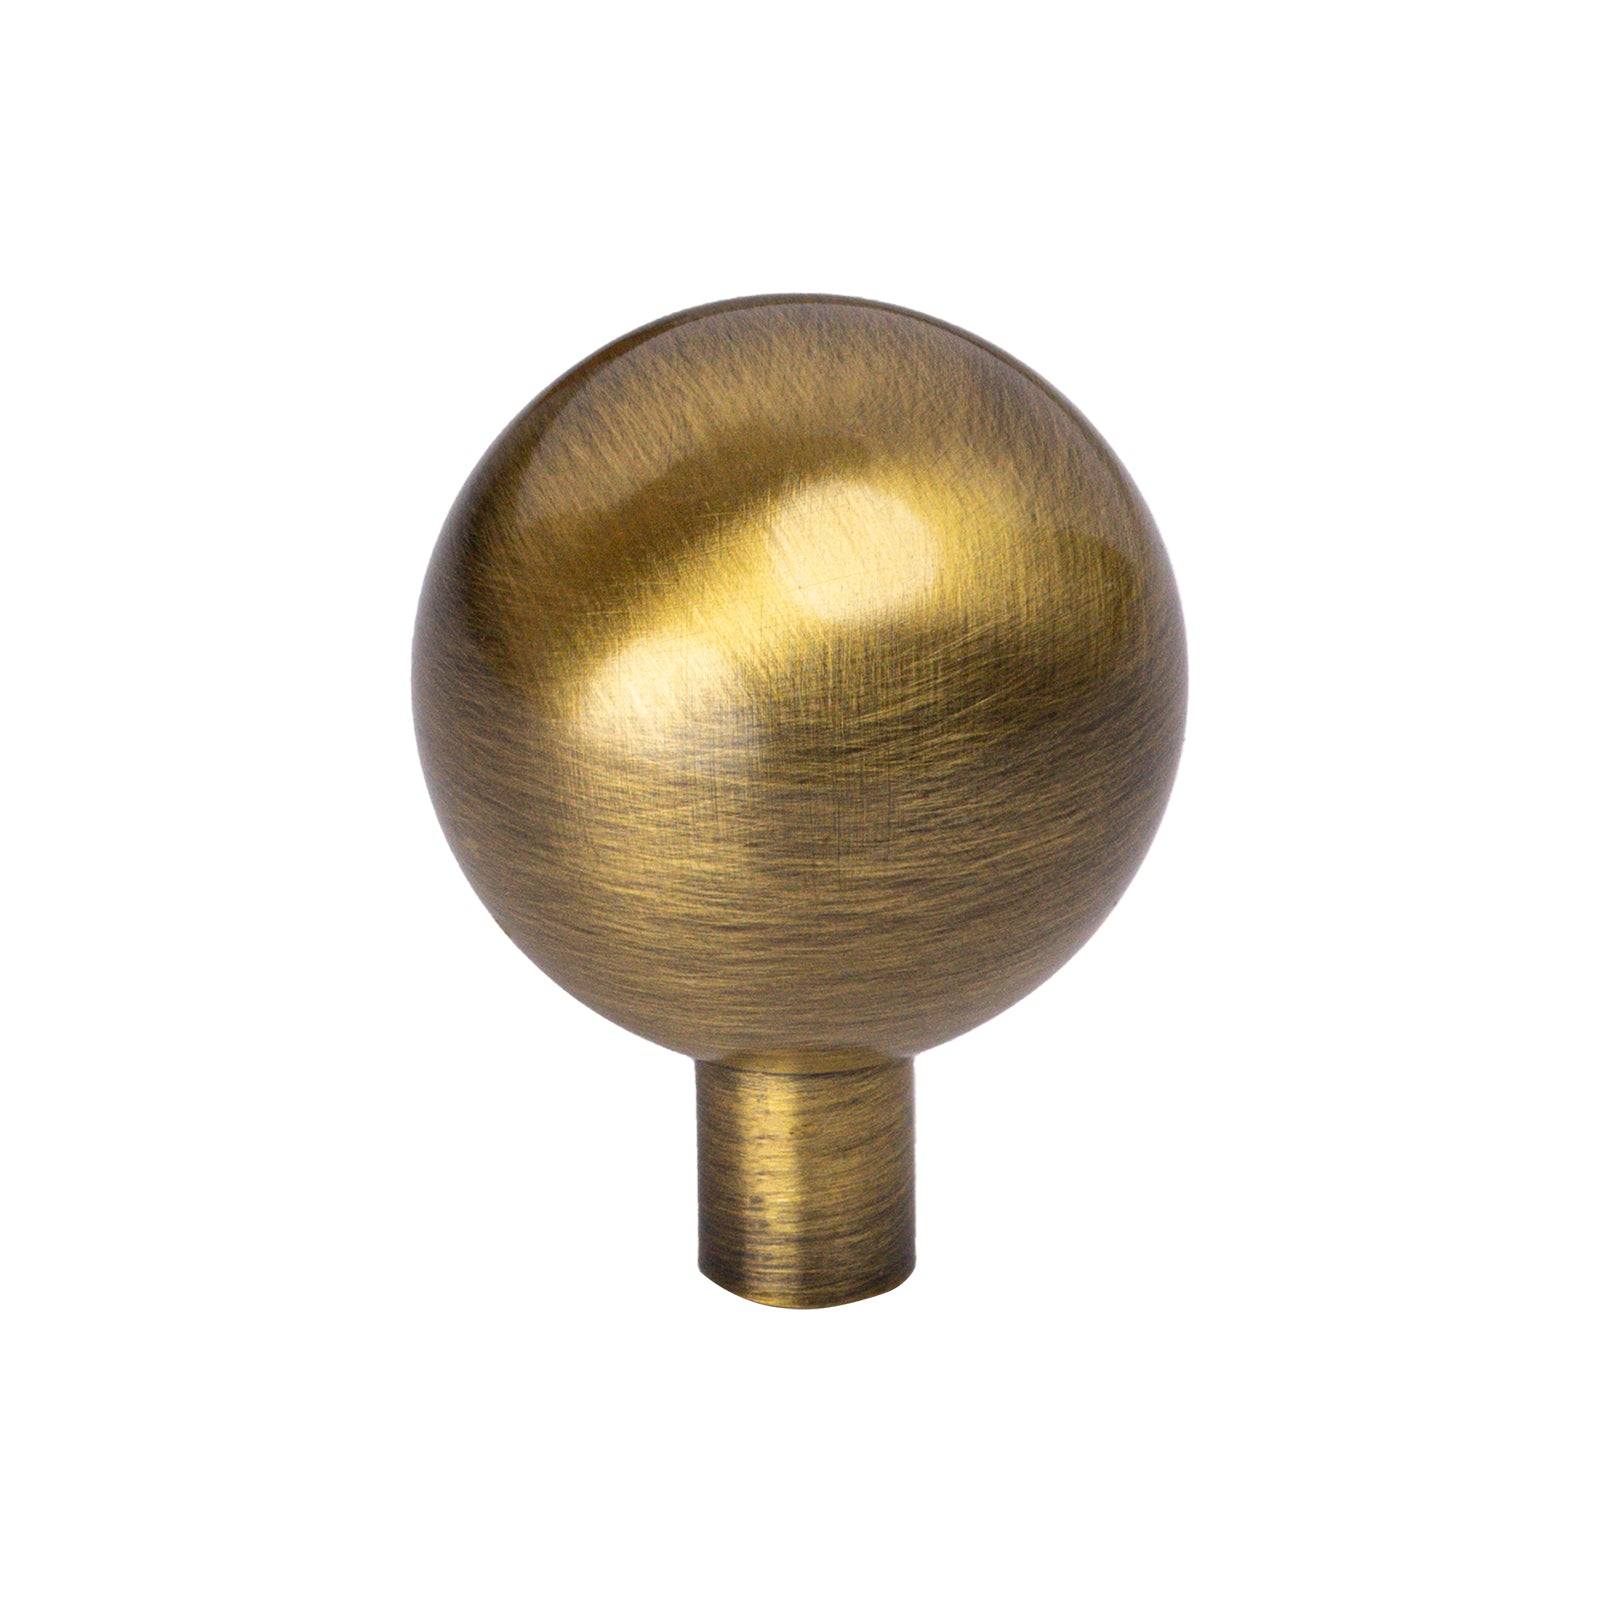 antique brass ball cabinet knobs, kitchen cupbard knobs, cabinet hardware SHOW